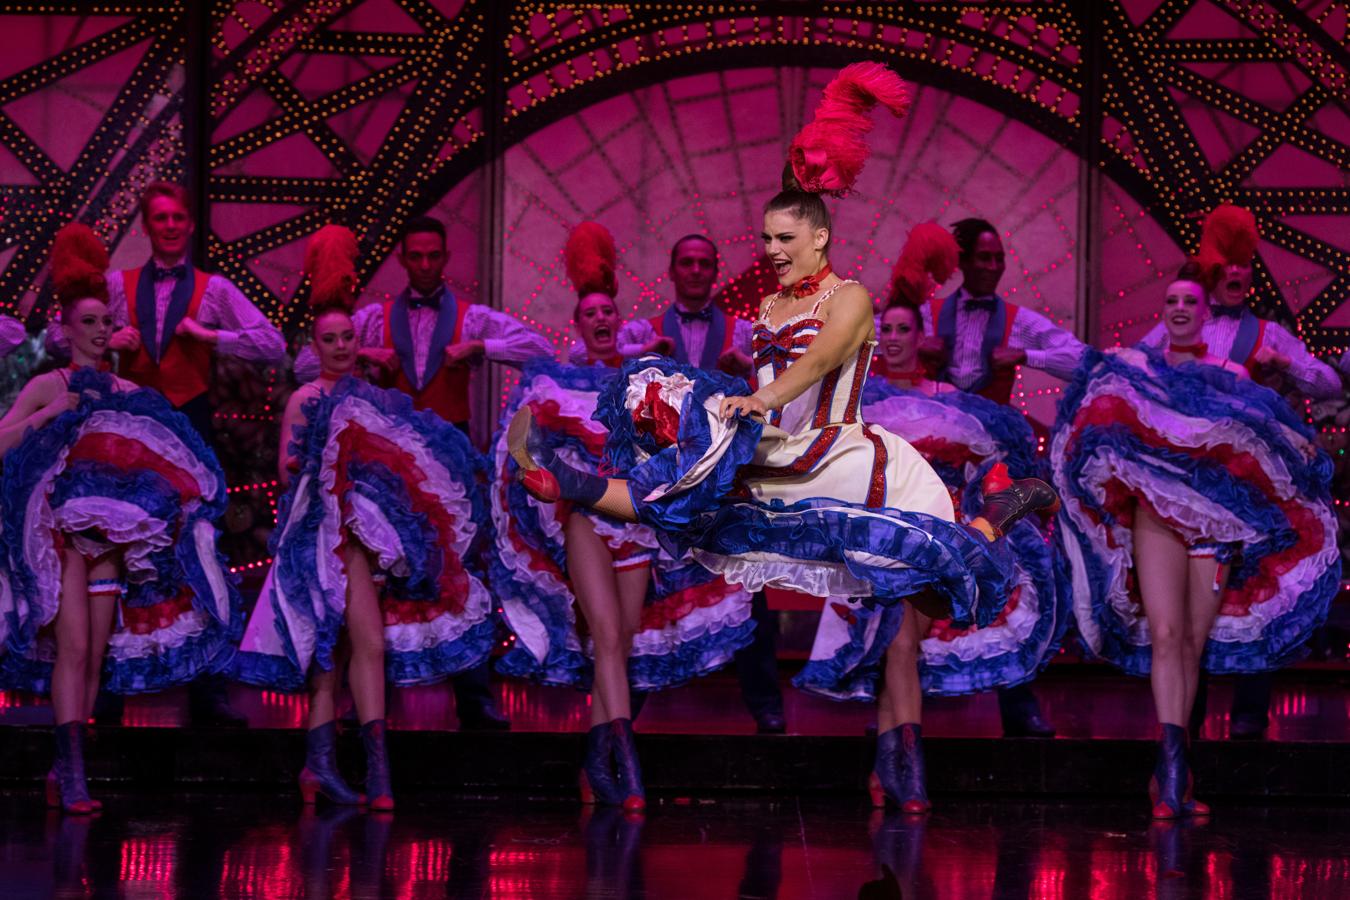 El número del cancán. Para Olga Khokhlova, una bailarina de la antigua Kazajstán soviética que interpreta un solo de cancán y que lleva 12 años en el Moulin Rouge, el espíritu del cabaré es intemporal.